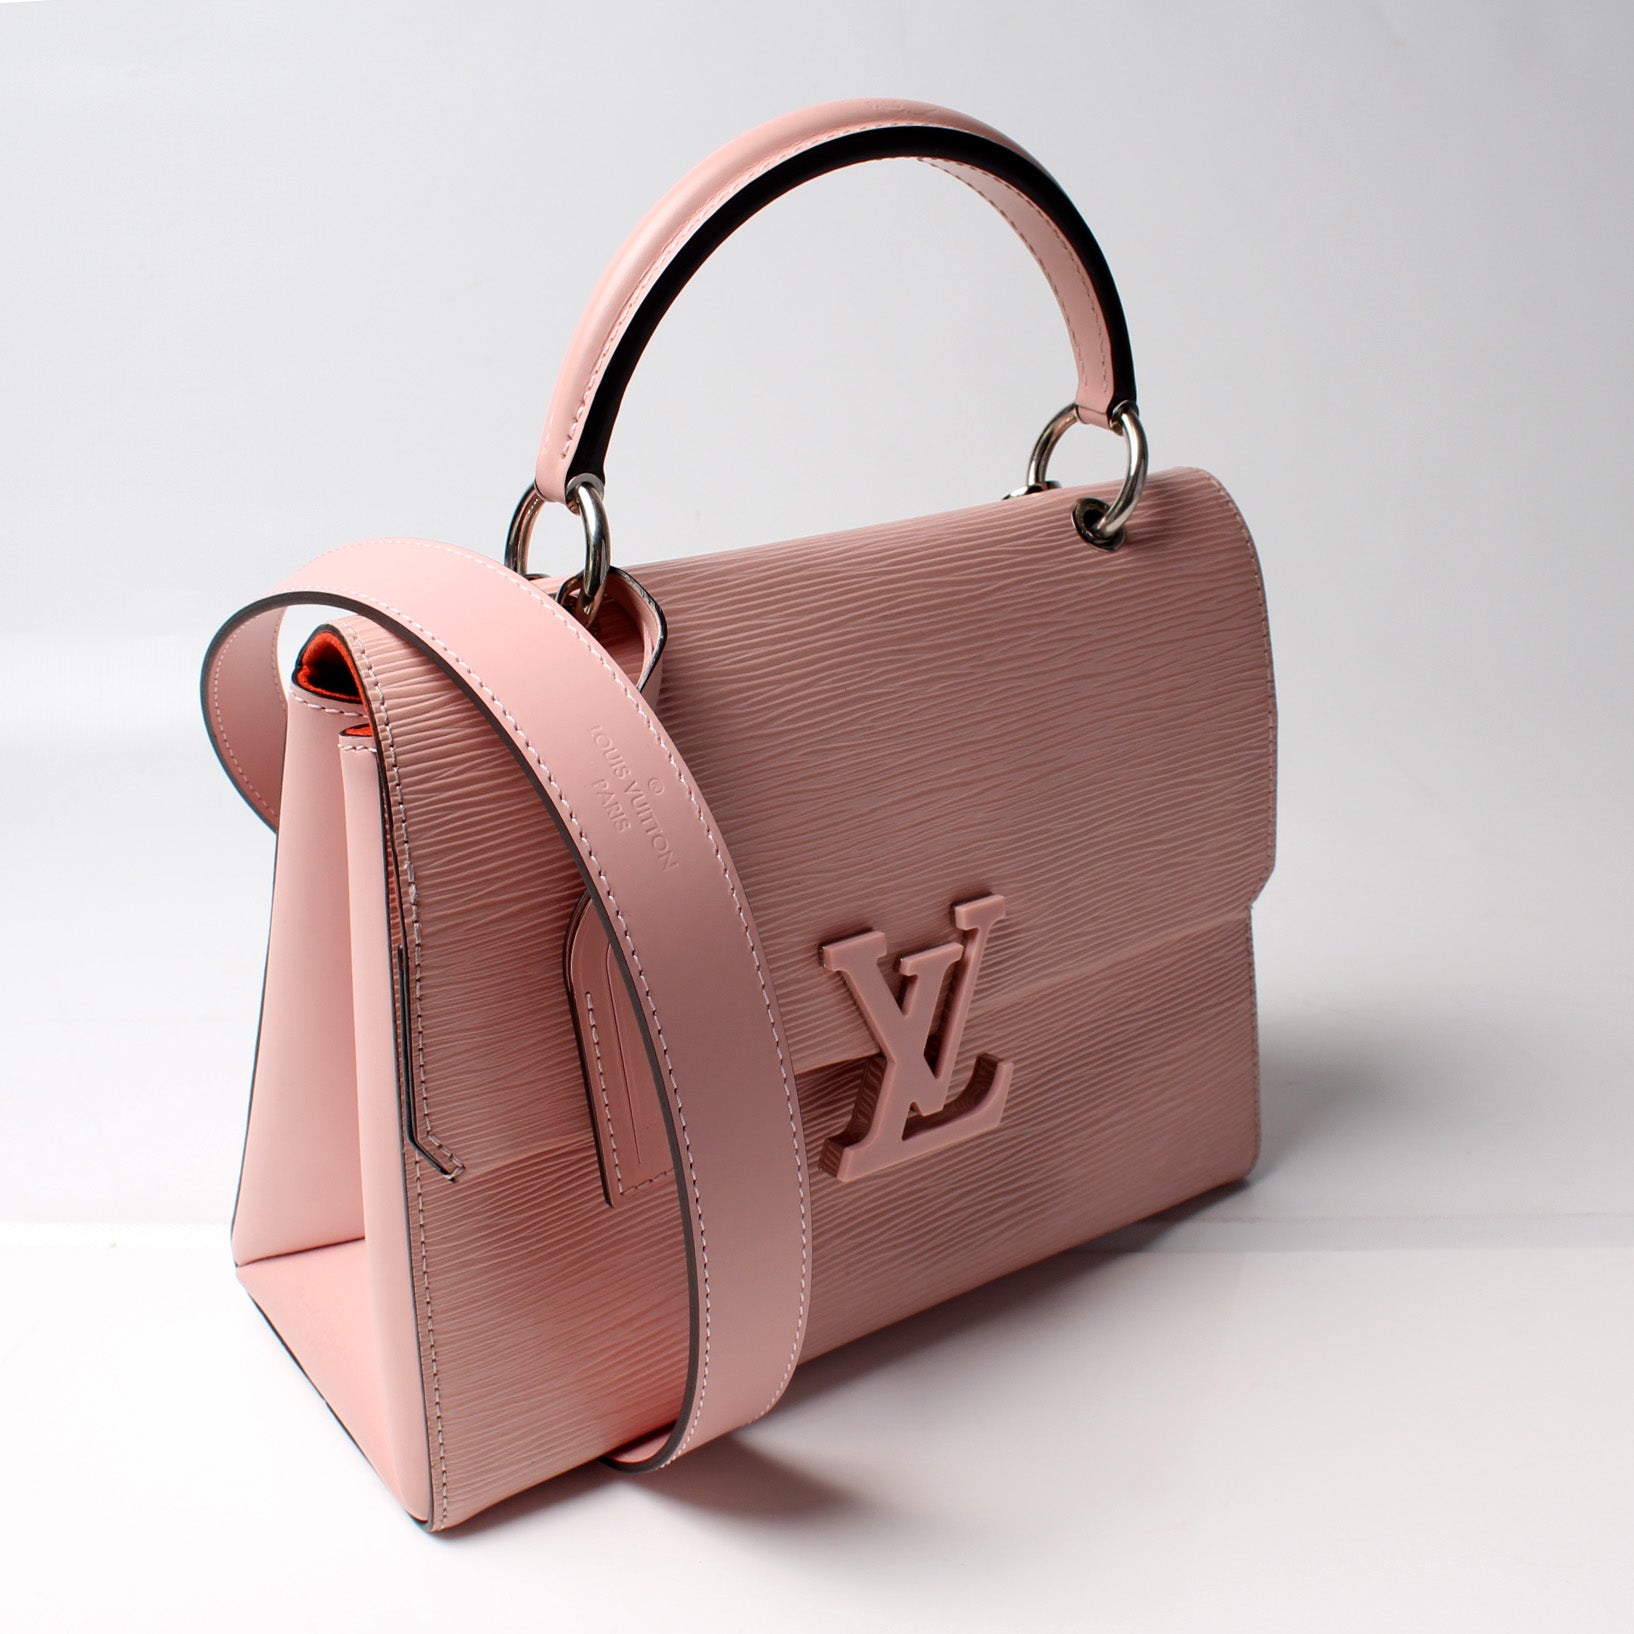 Louis Vuitton Epi Grenelle PM - Pink Handle Bags, Handbags